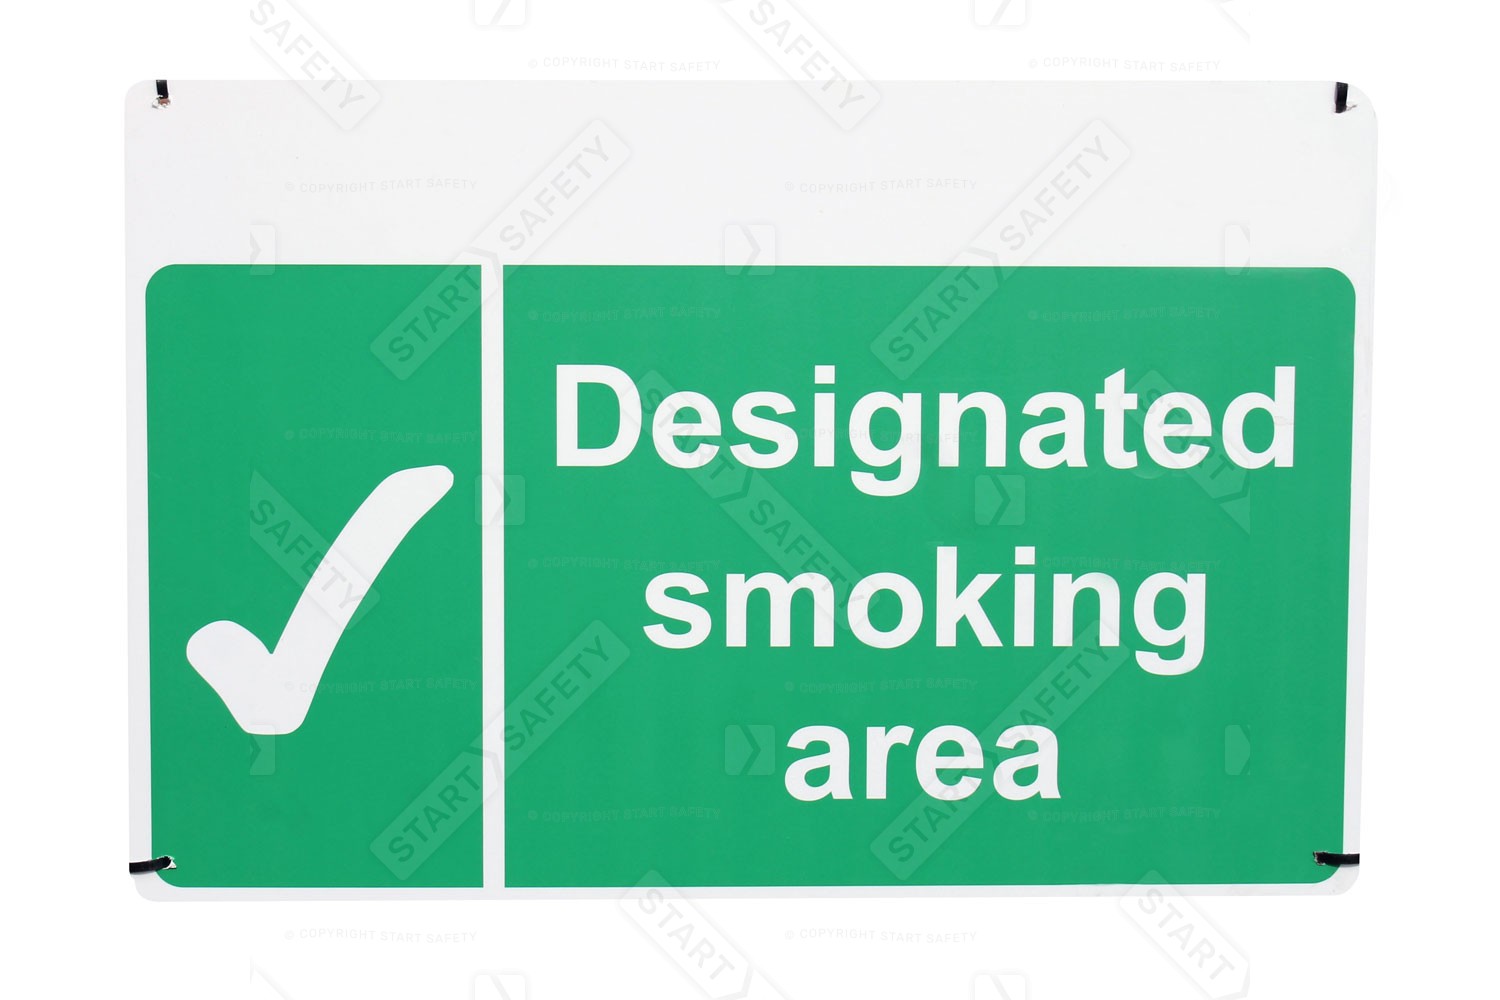 Designated Smoking Area Sign For Smoking Areas and Smoking Shelters